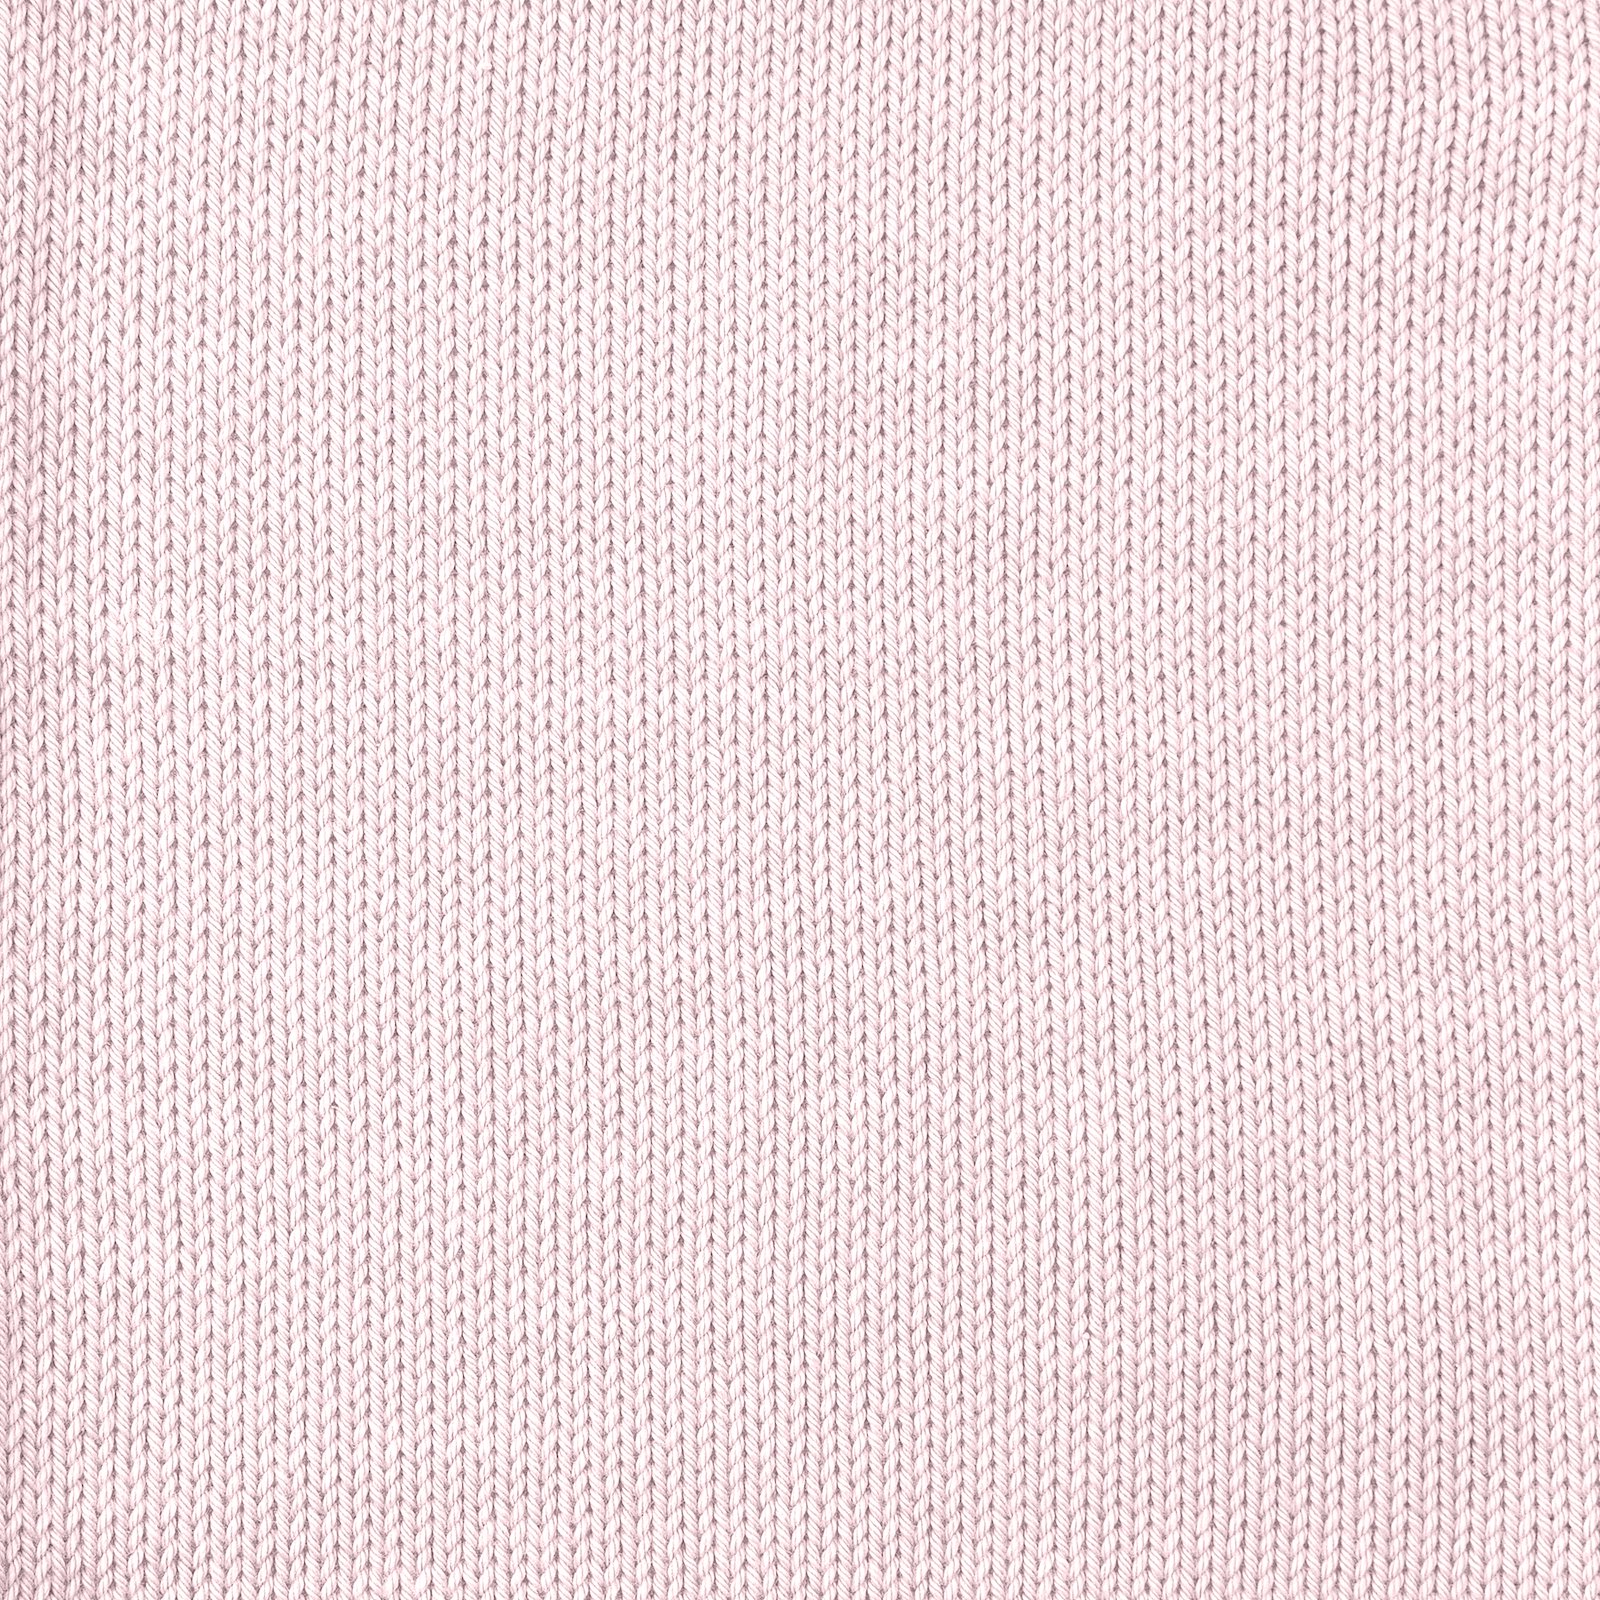 FRAYA, 100% cotton yarn "Colourful", soft rose 90060088_sskit